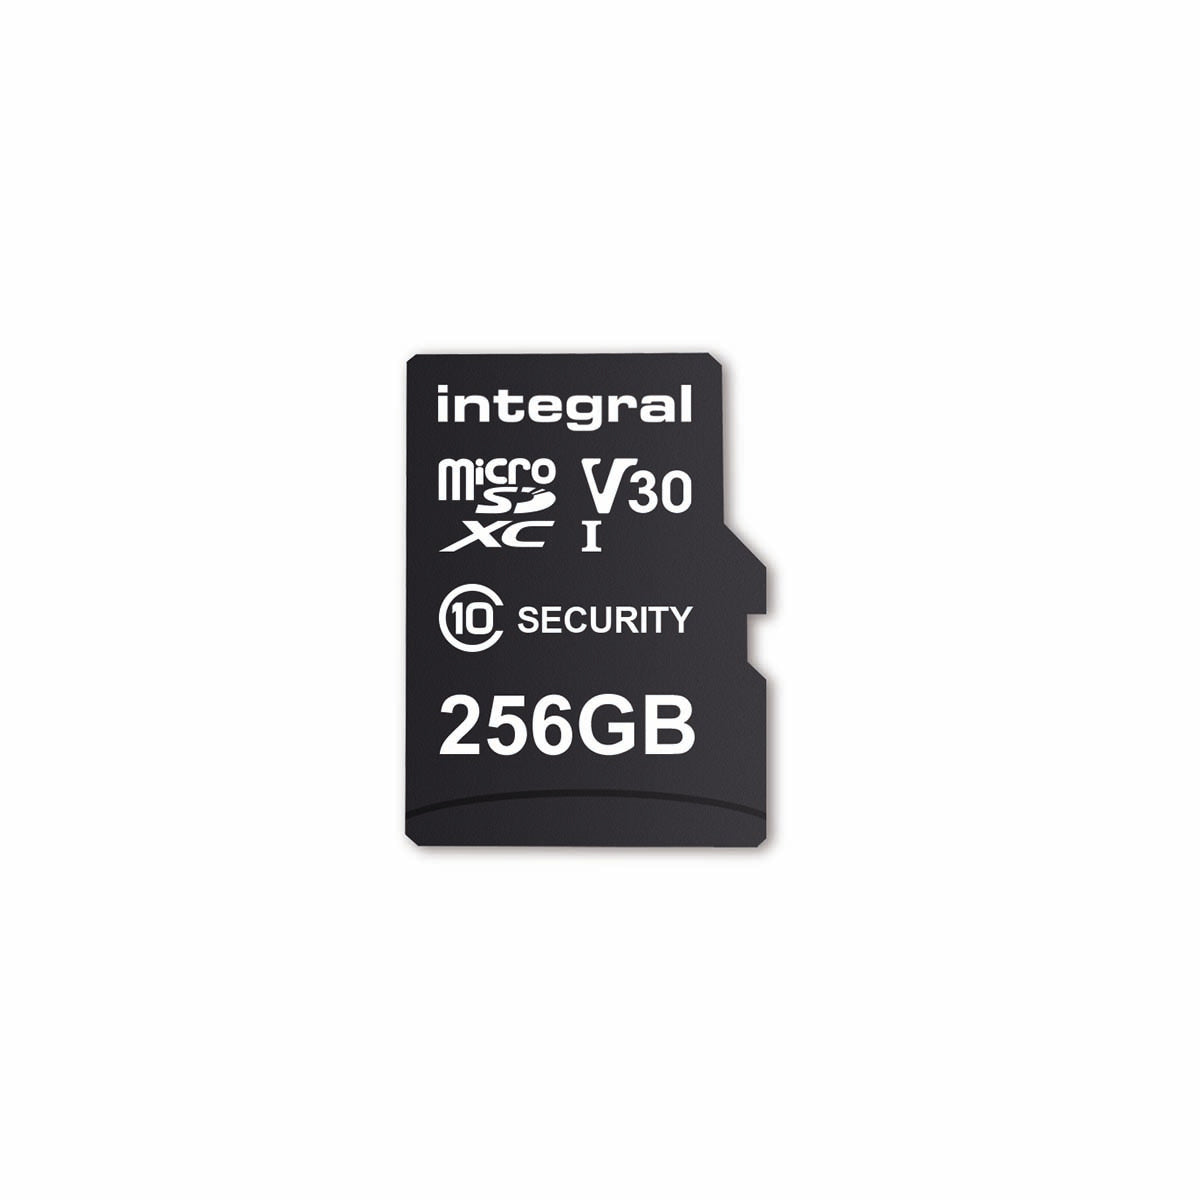 256 GB Überwachungskamera microSD-Karte für Dashcams, Home Cams, CCTV, Body Cams & Drohnen